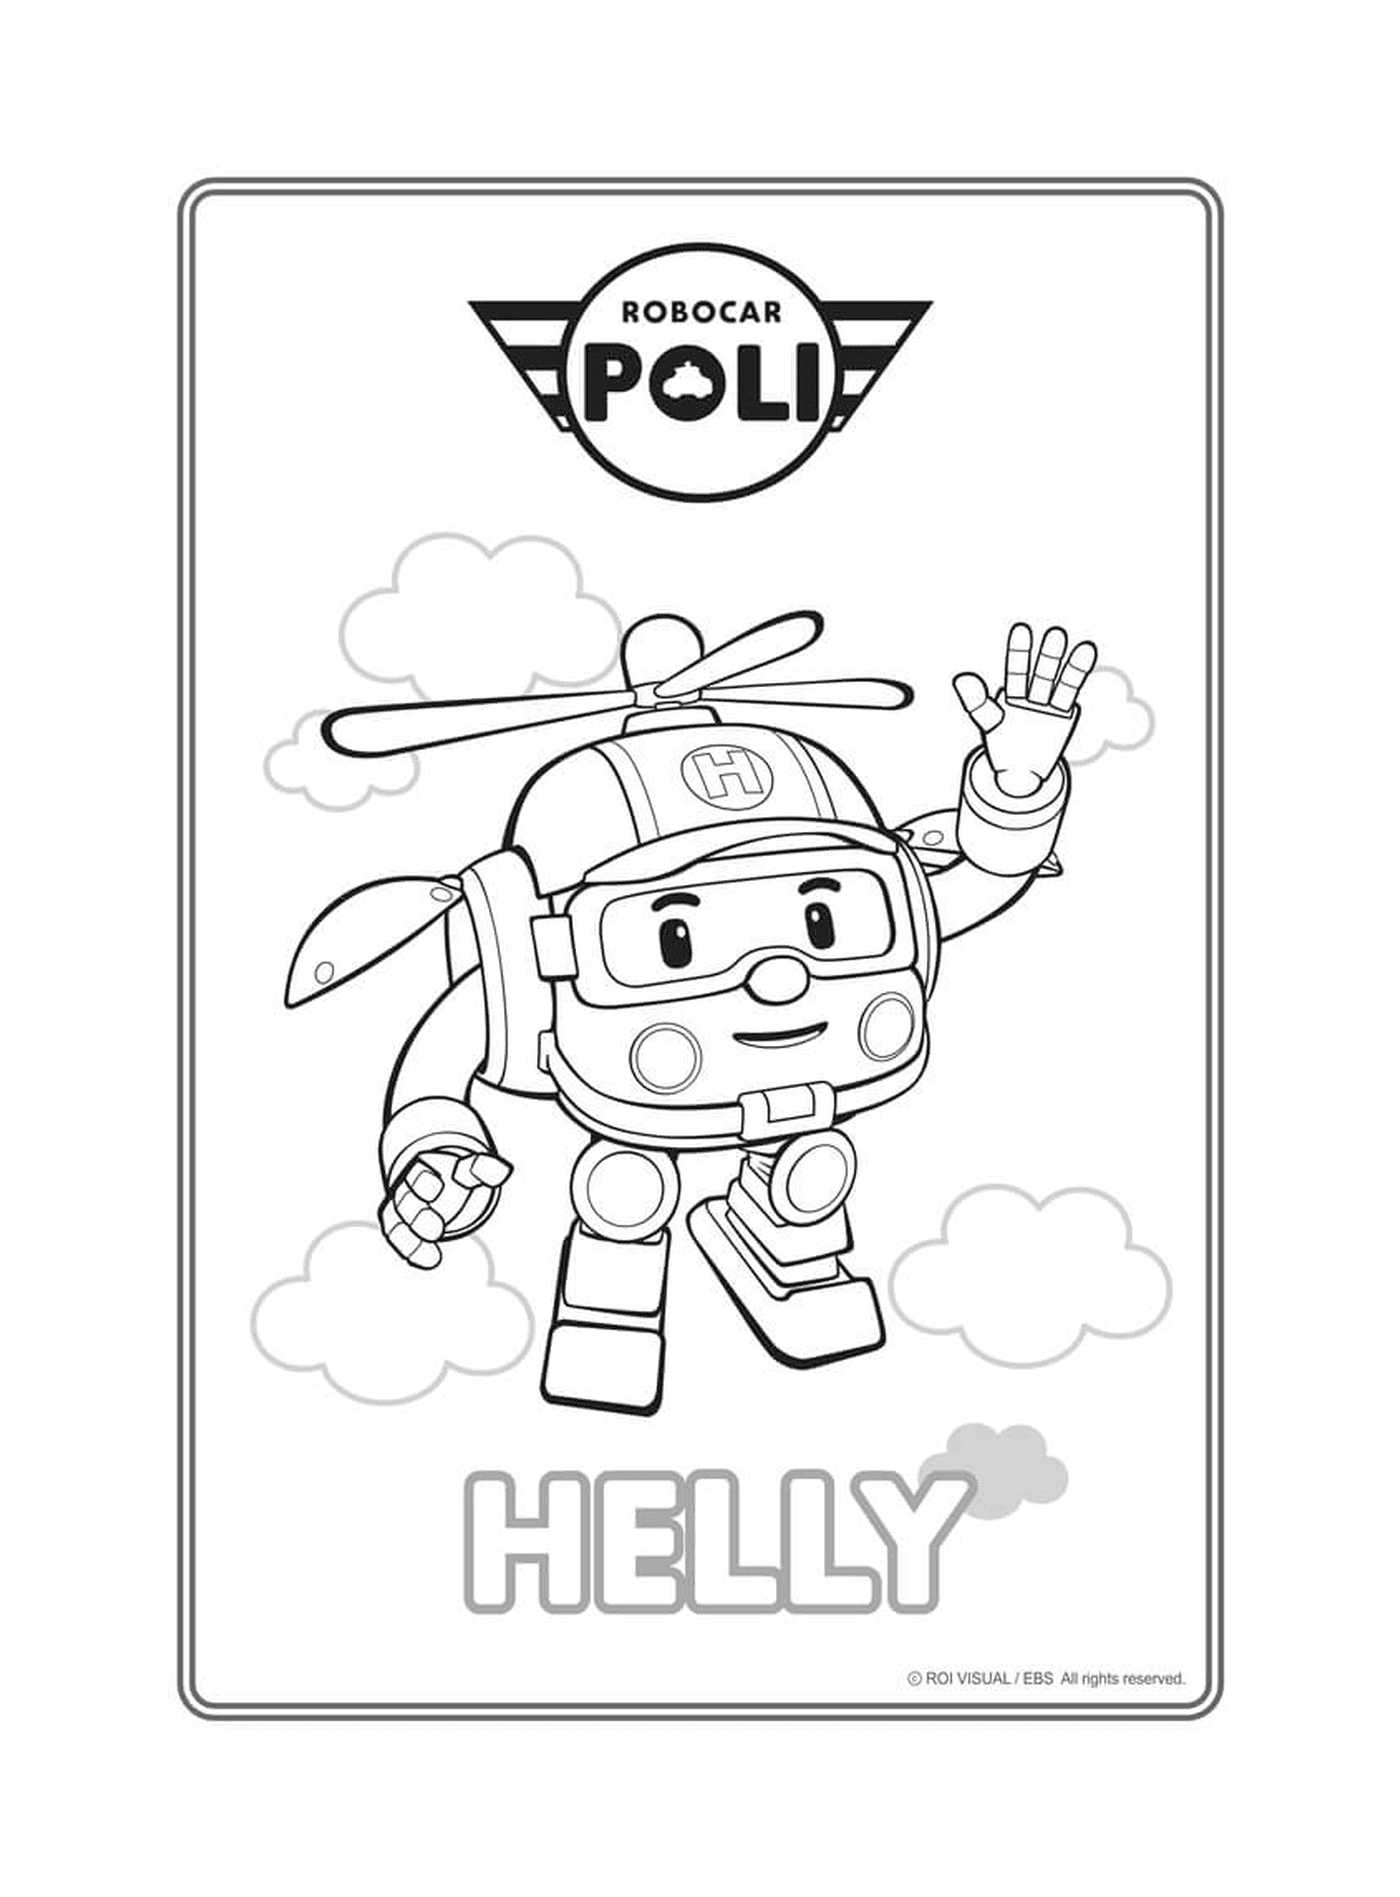  Helly, el helicóptero de Robocar Poli 